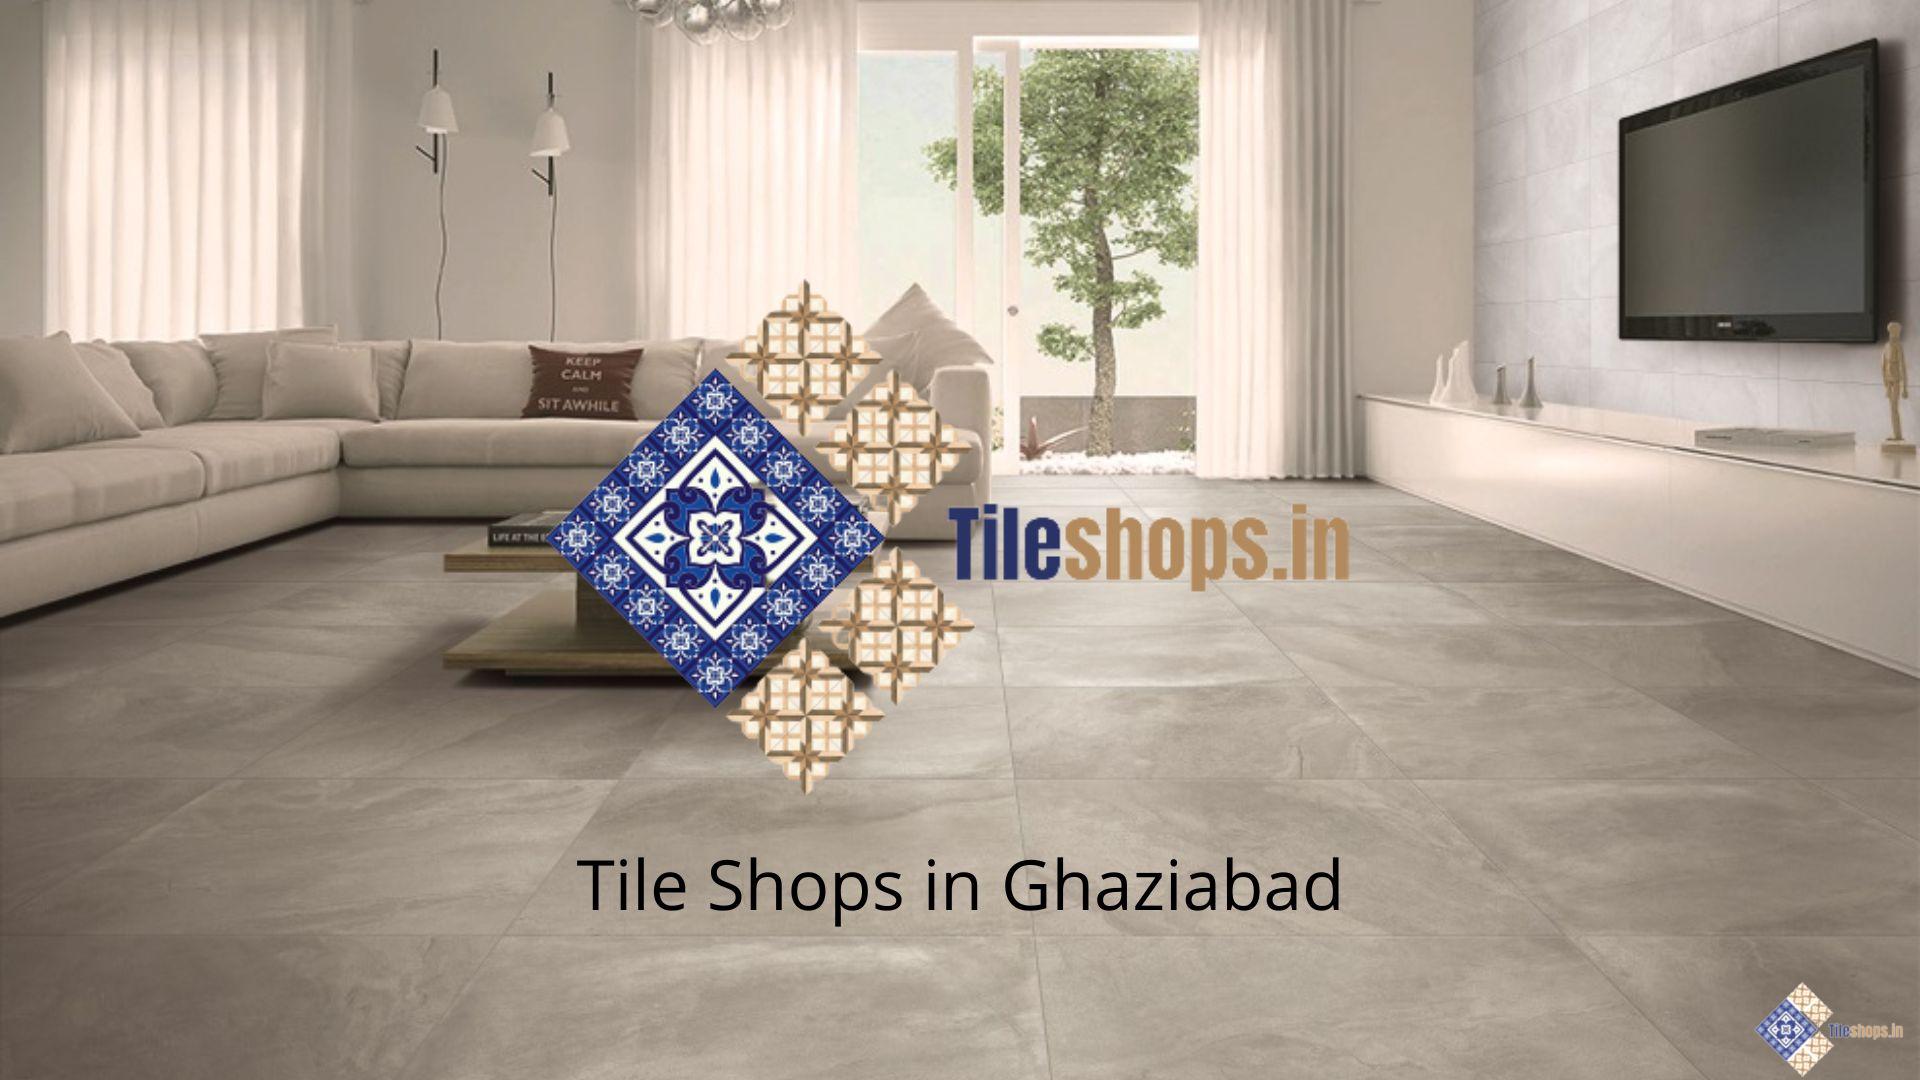 Tile Shops in Ghaziabad